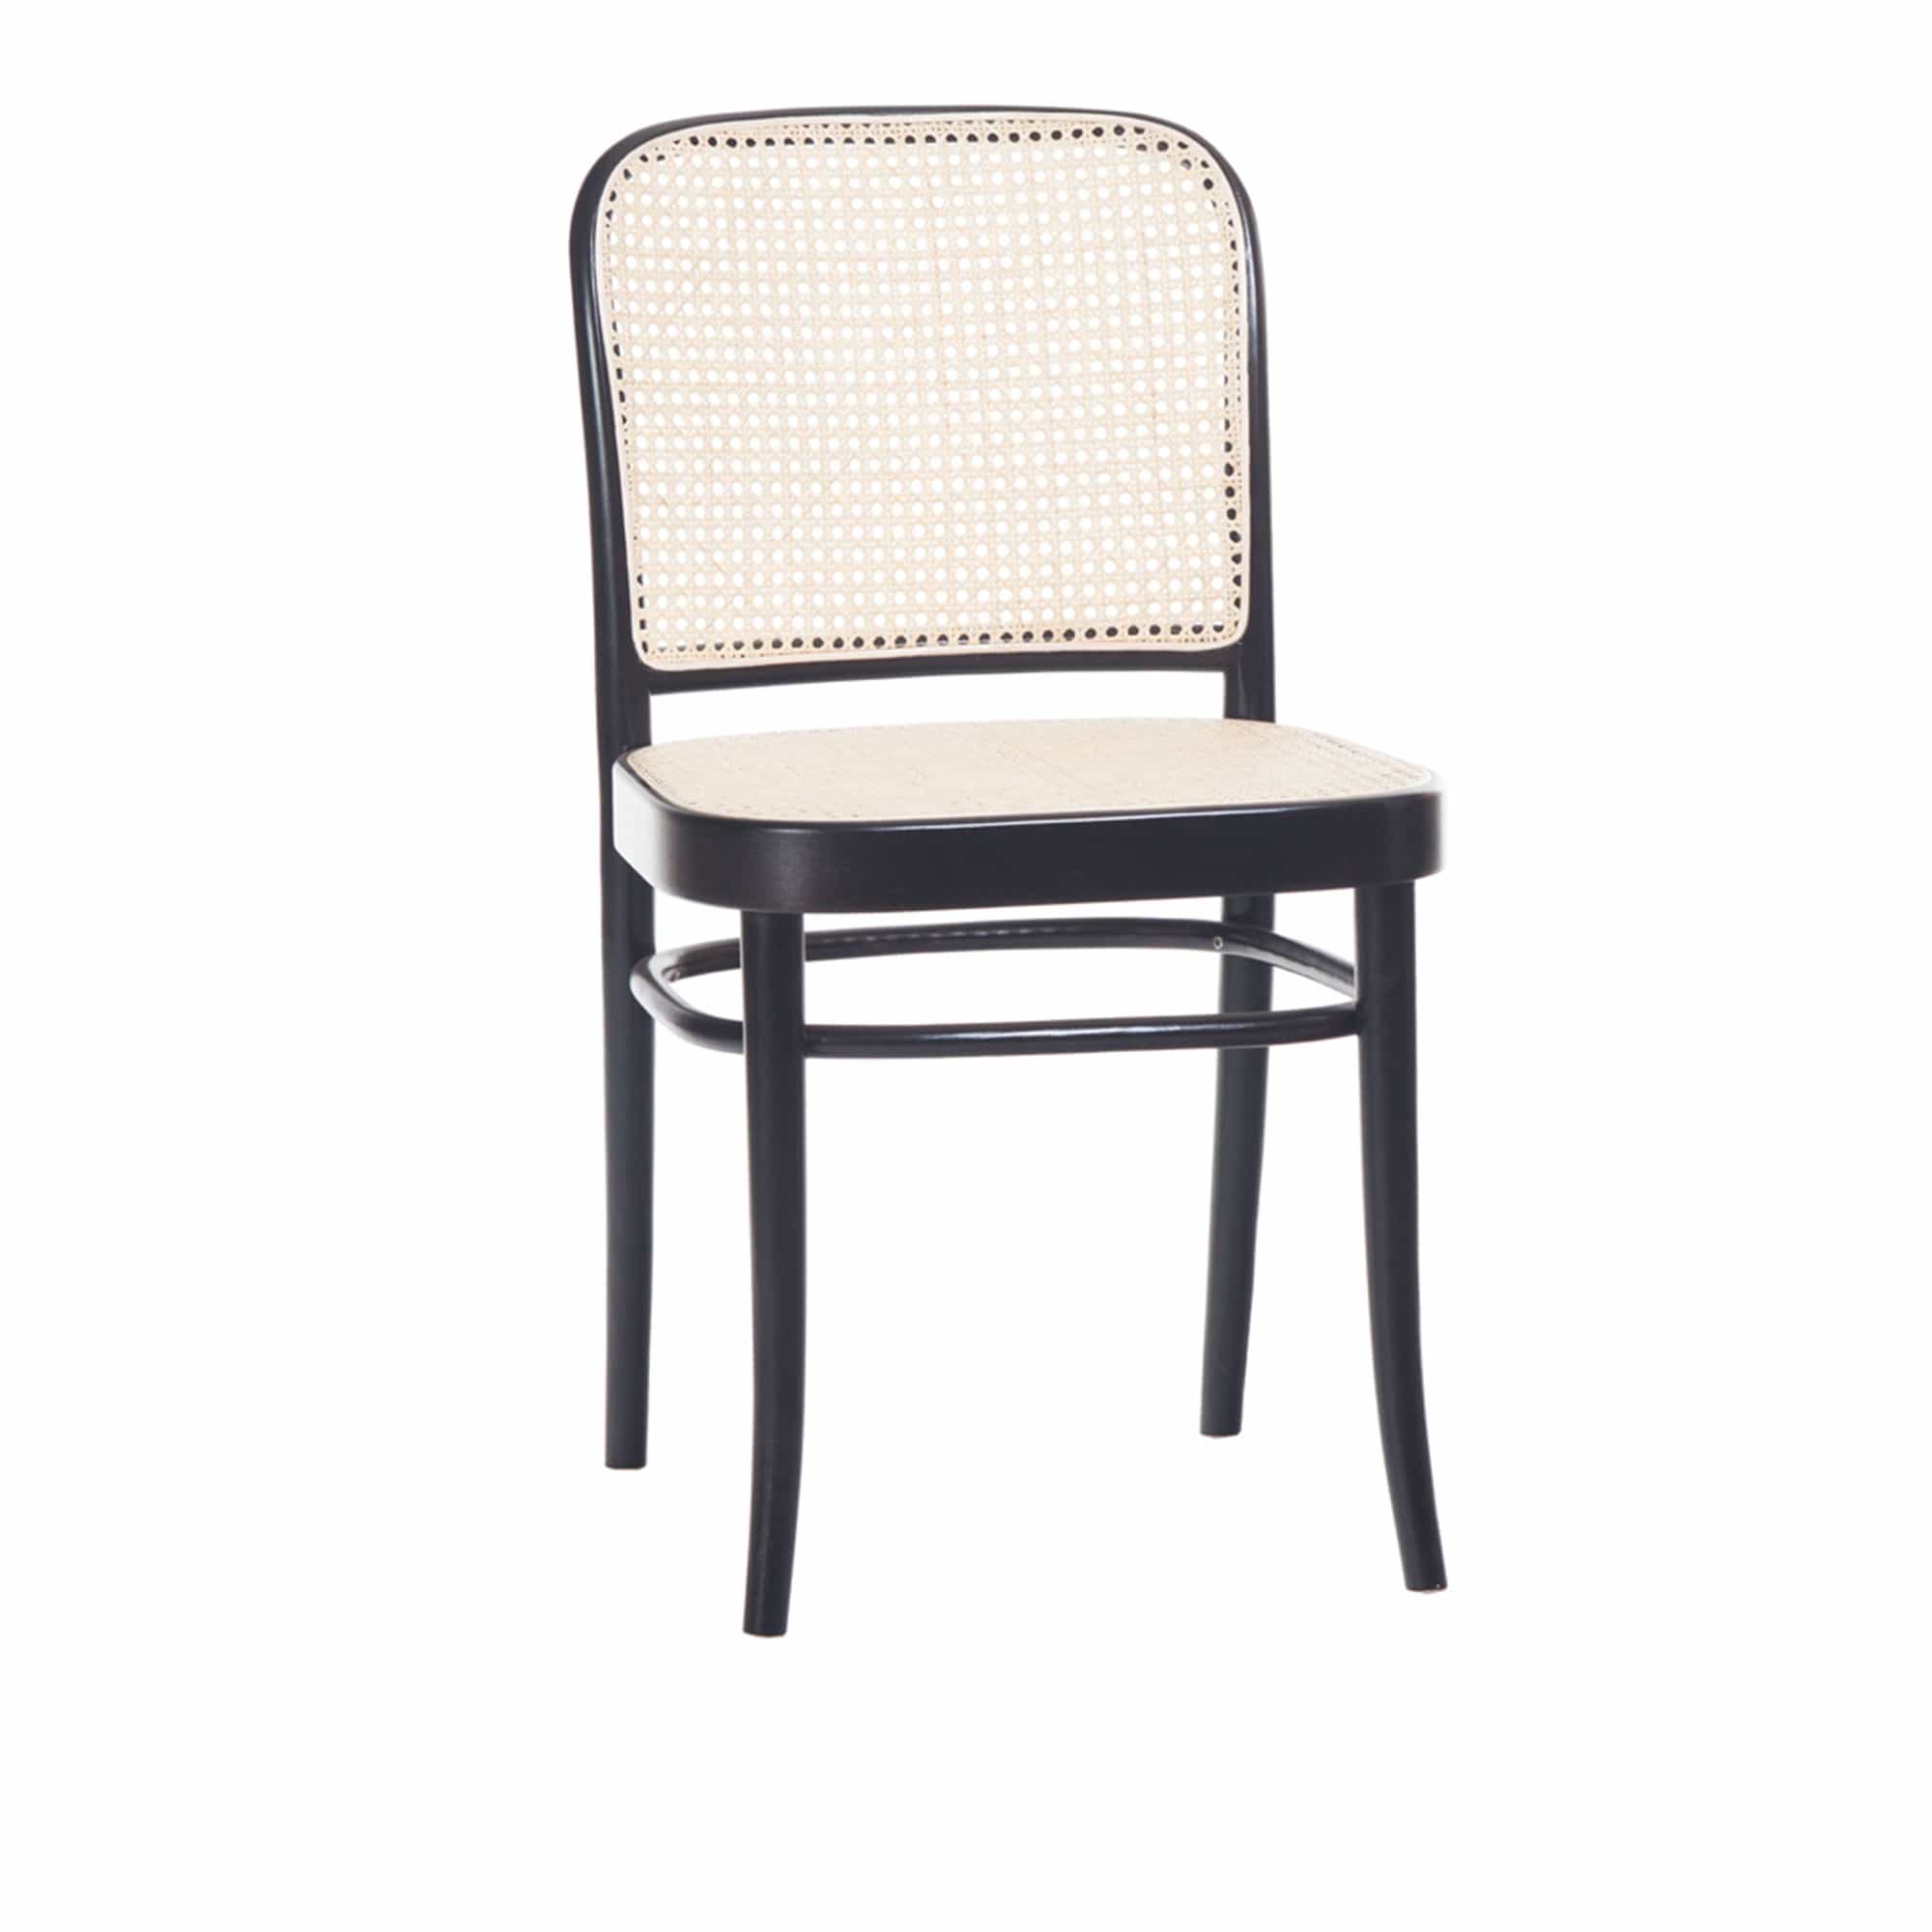 Chair 811 Cane